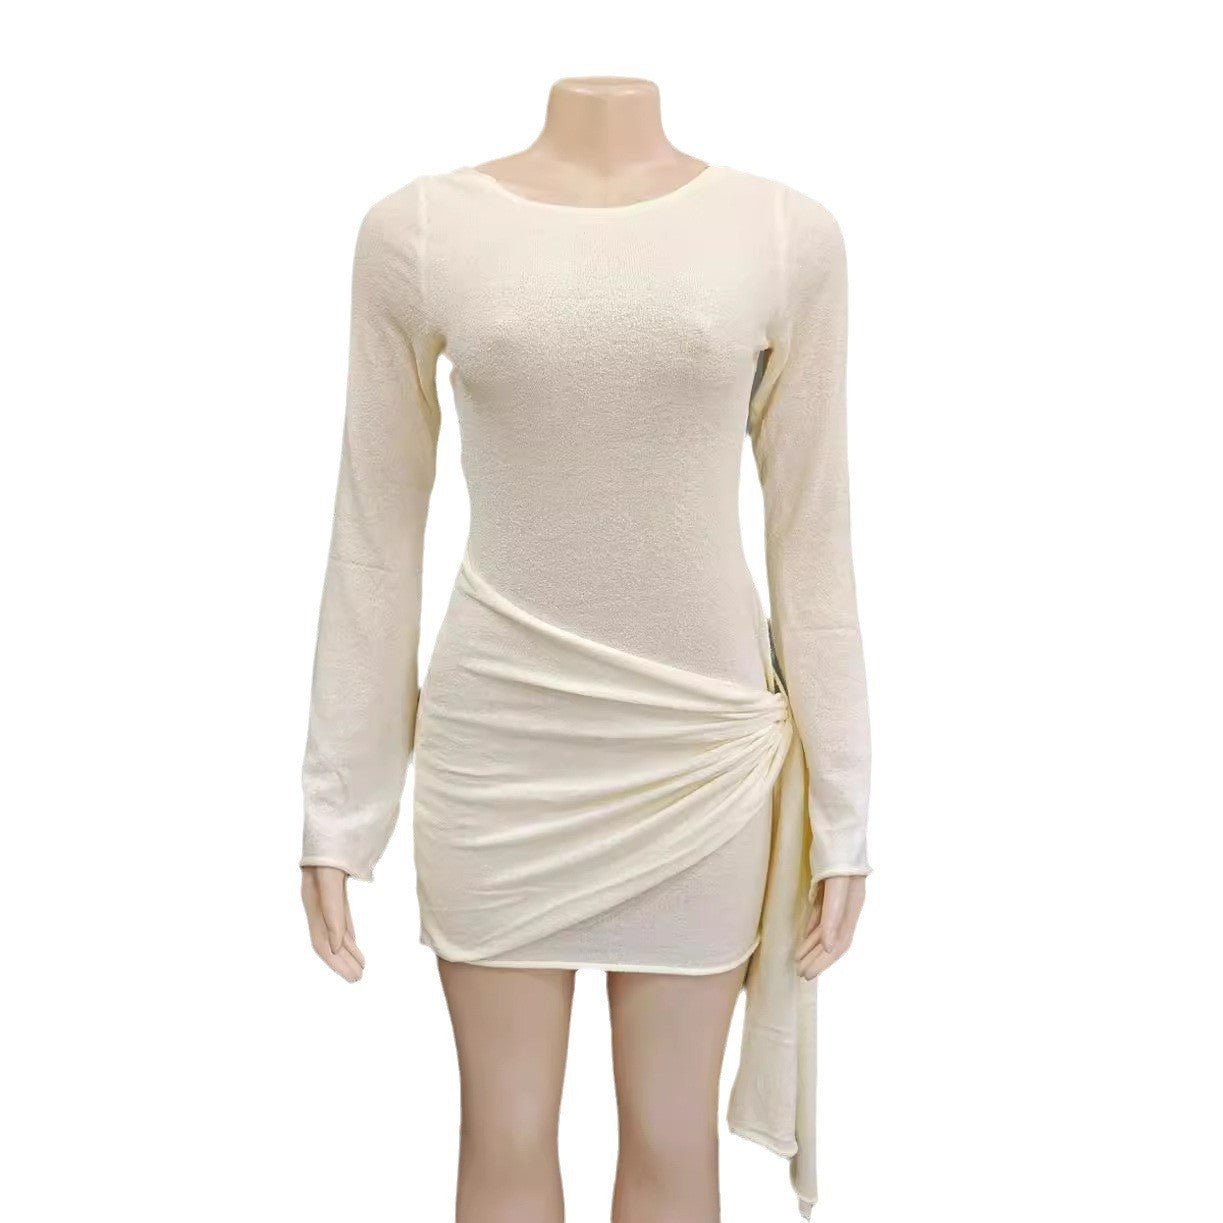 Modieuze gebreide jurk korte rok voor dames - NextthinkShop0CJLY206270103CX0